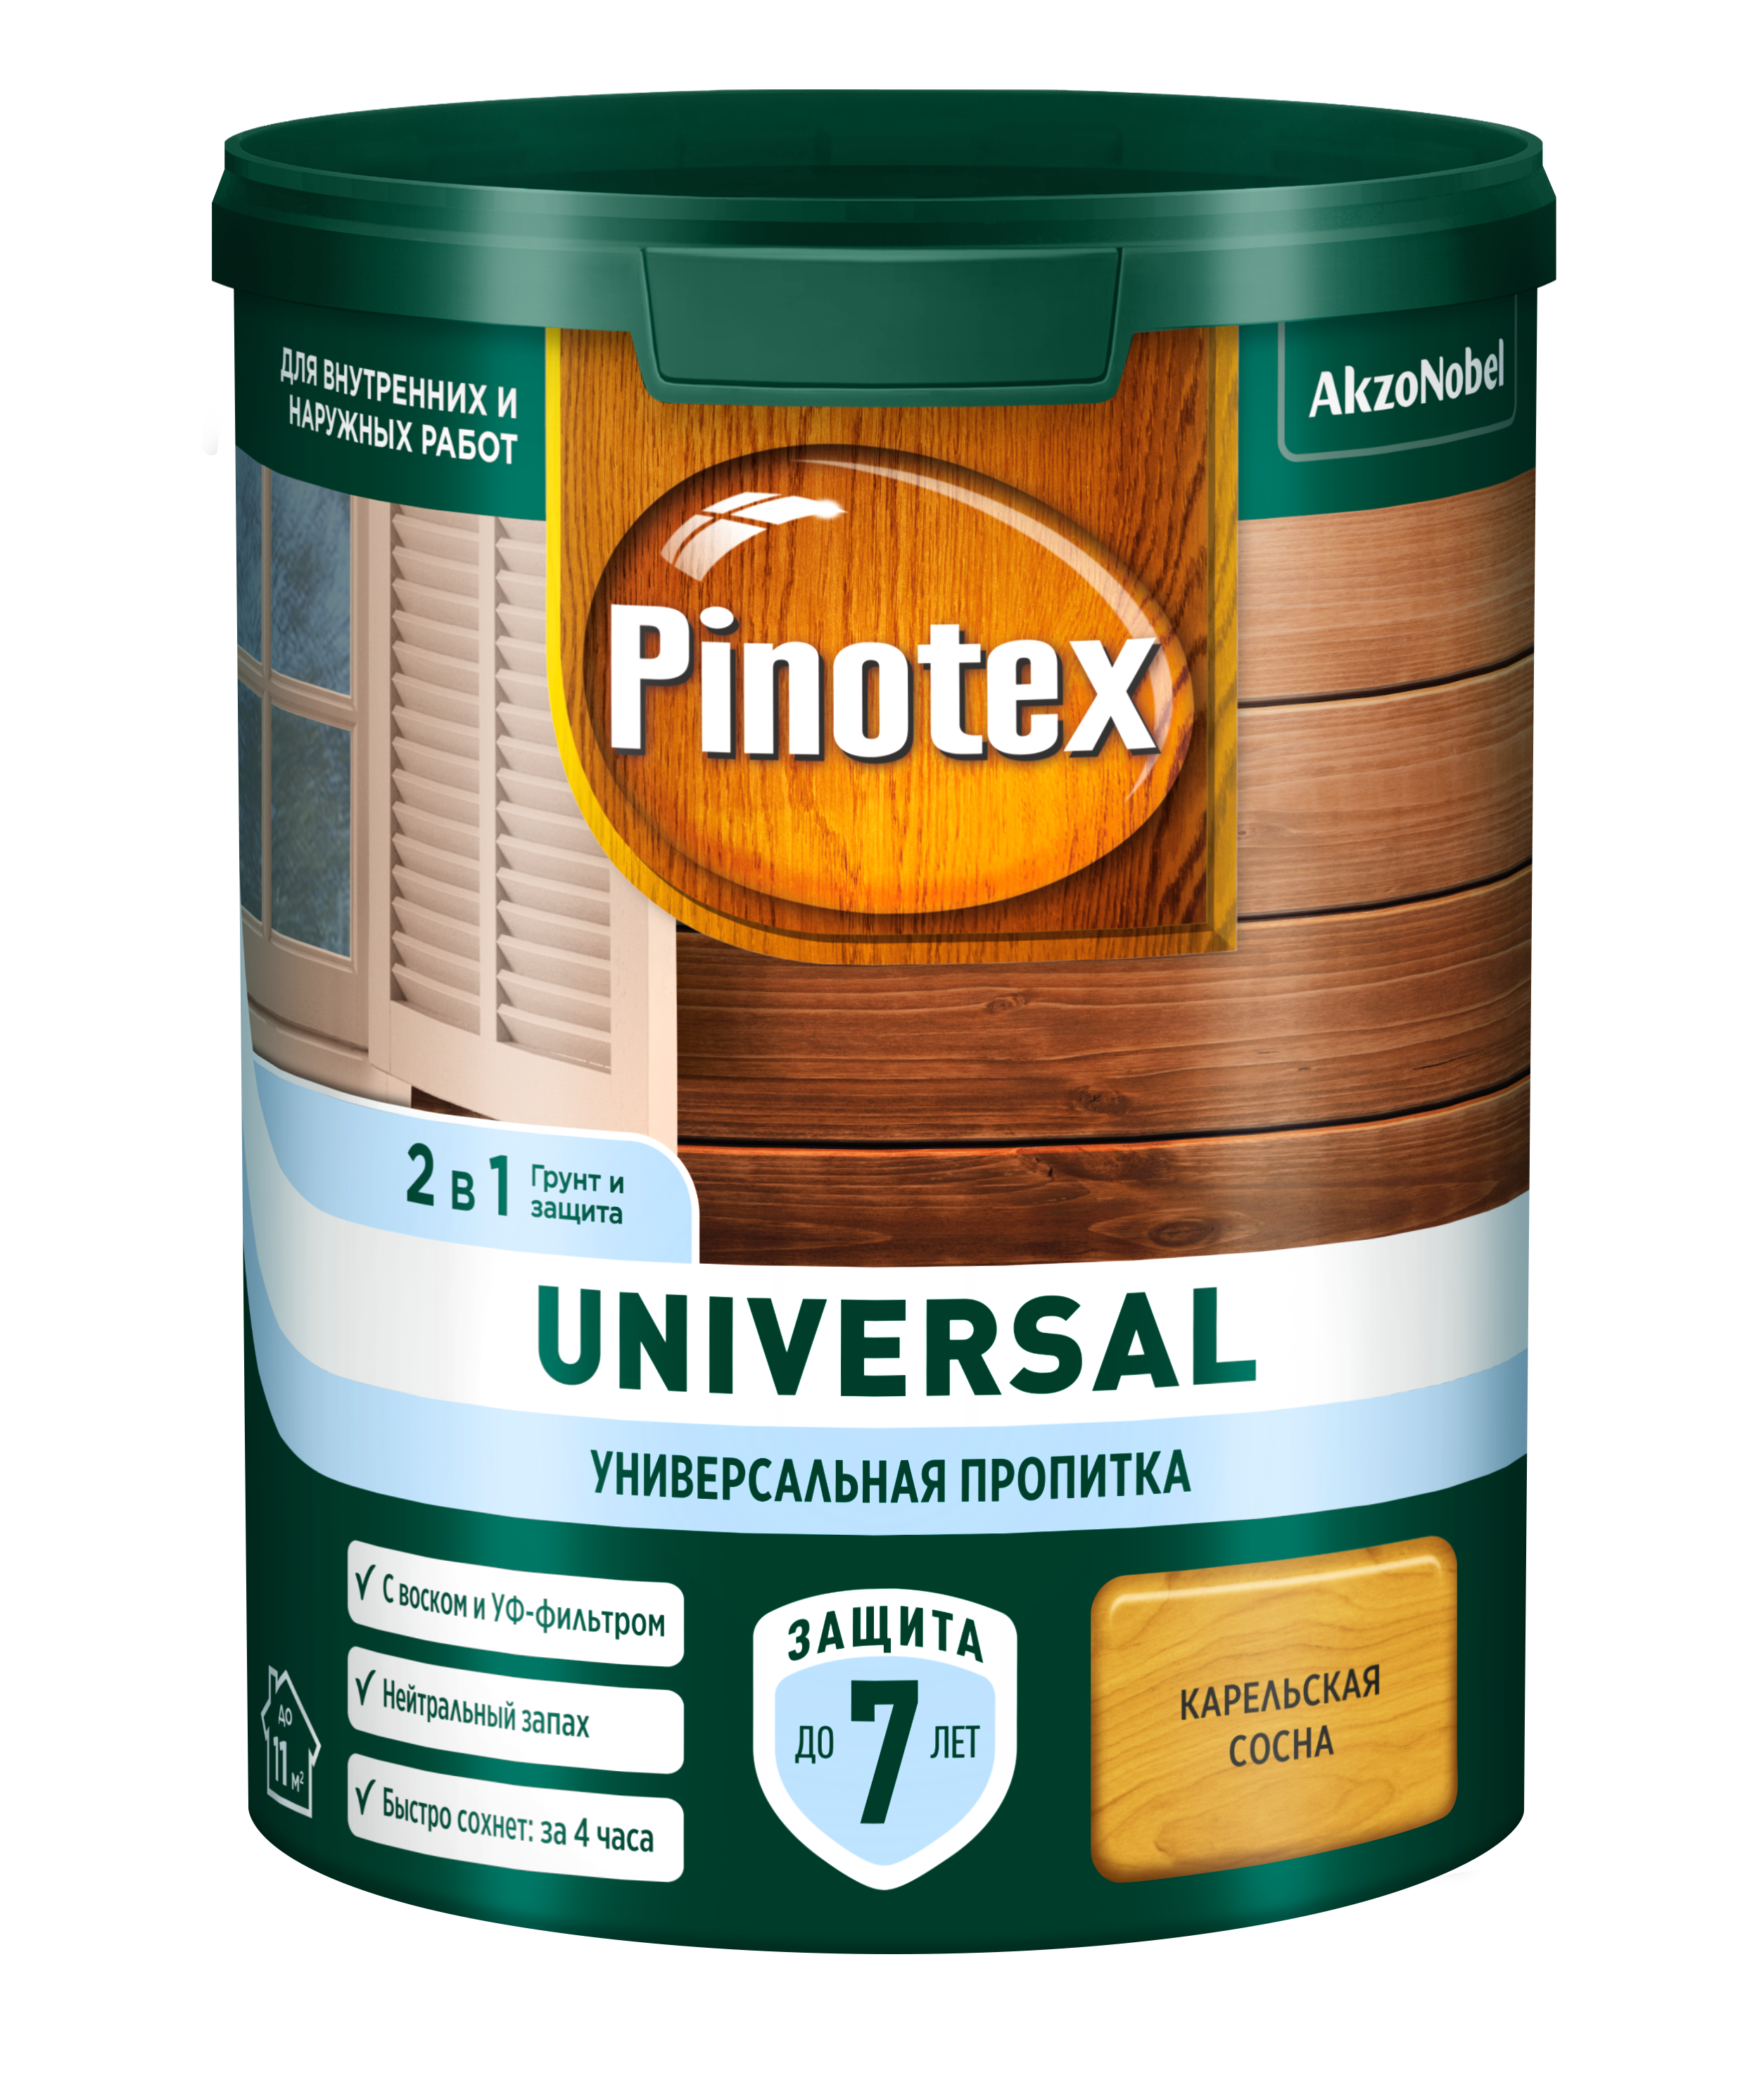 фото Пропитка универсальная для дерева pinotex universal 2 в 1, карельская сосна, 900 мл